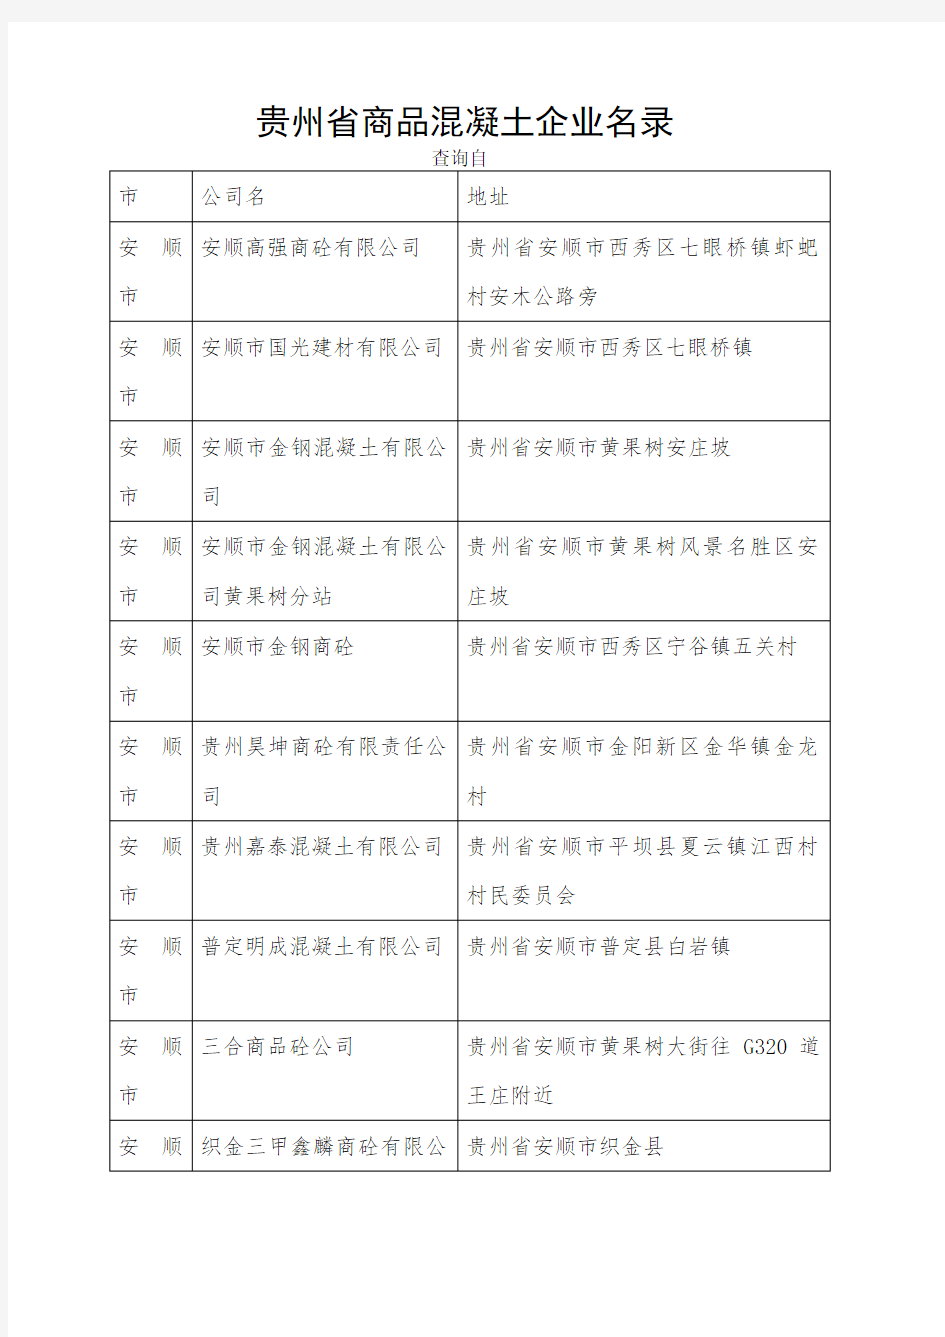 贵州省商品混凝土企业名录